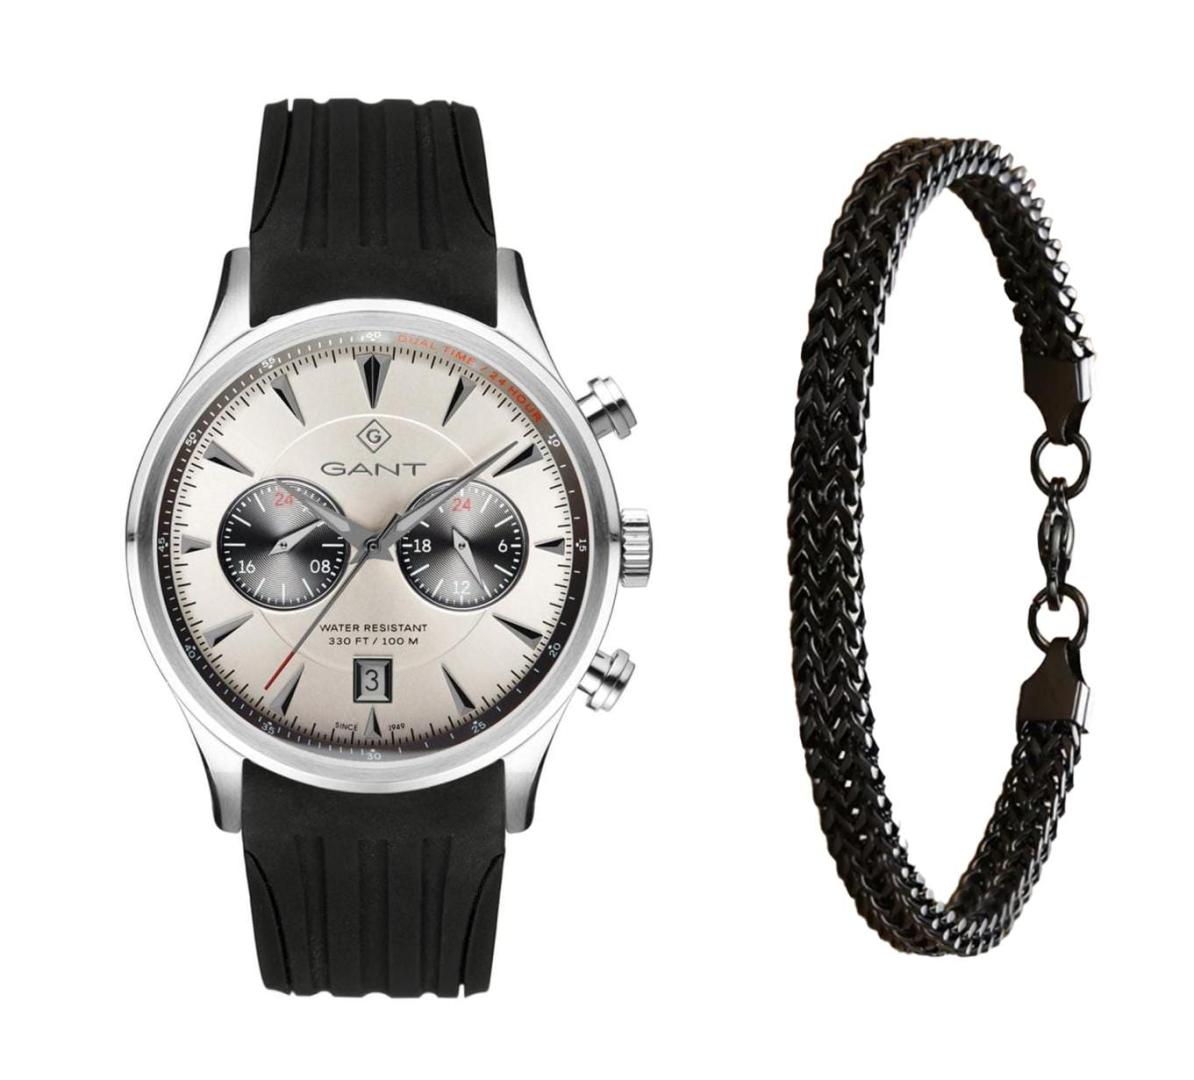 שעון יד אנלוגי לגבר gant g135013 גאנט עם צמיד חוליות שחור